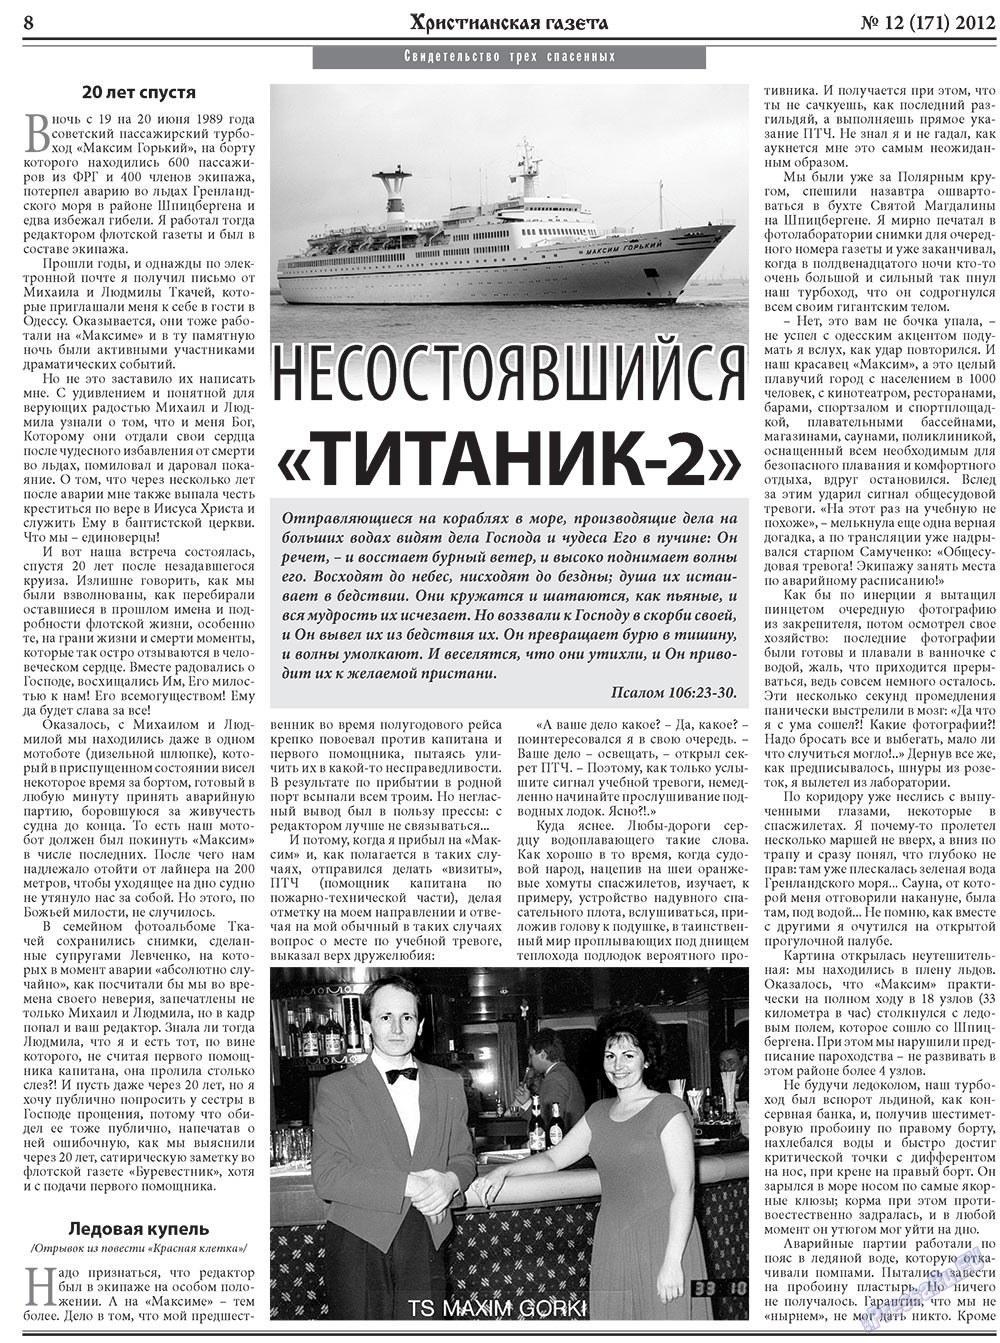 Христианская газета, газета. 2012 №12 стр.8